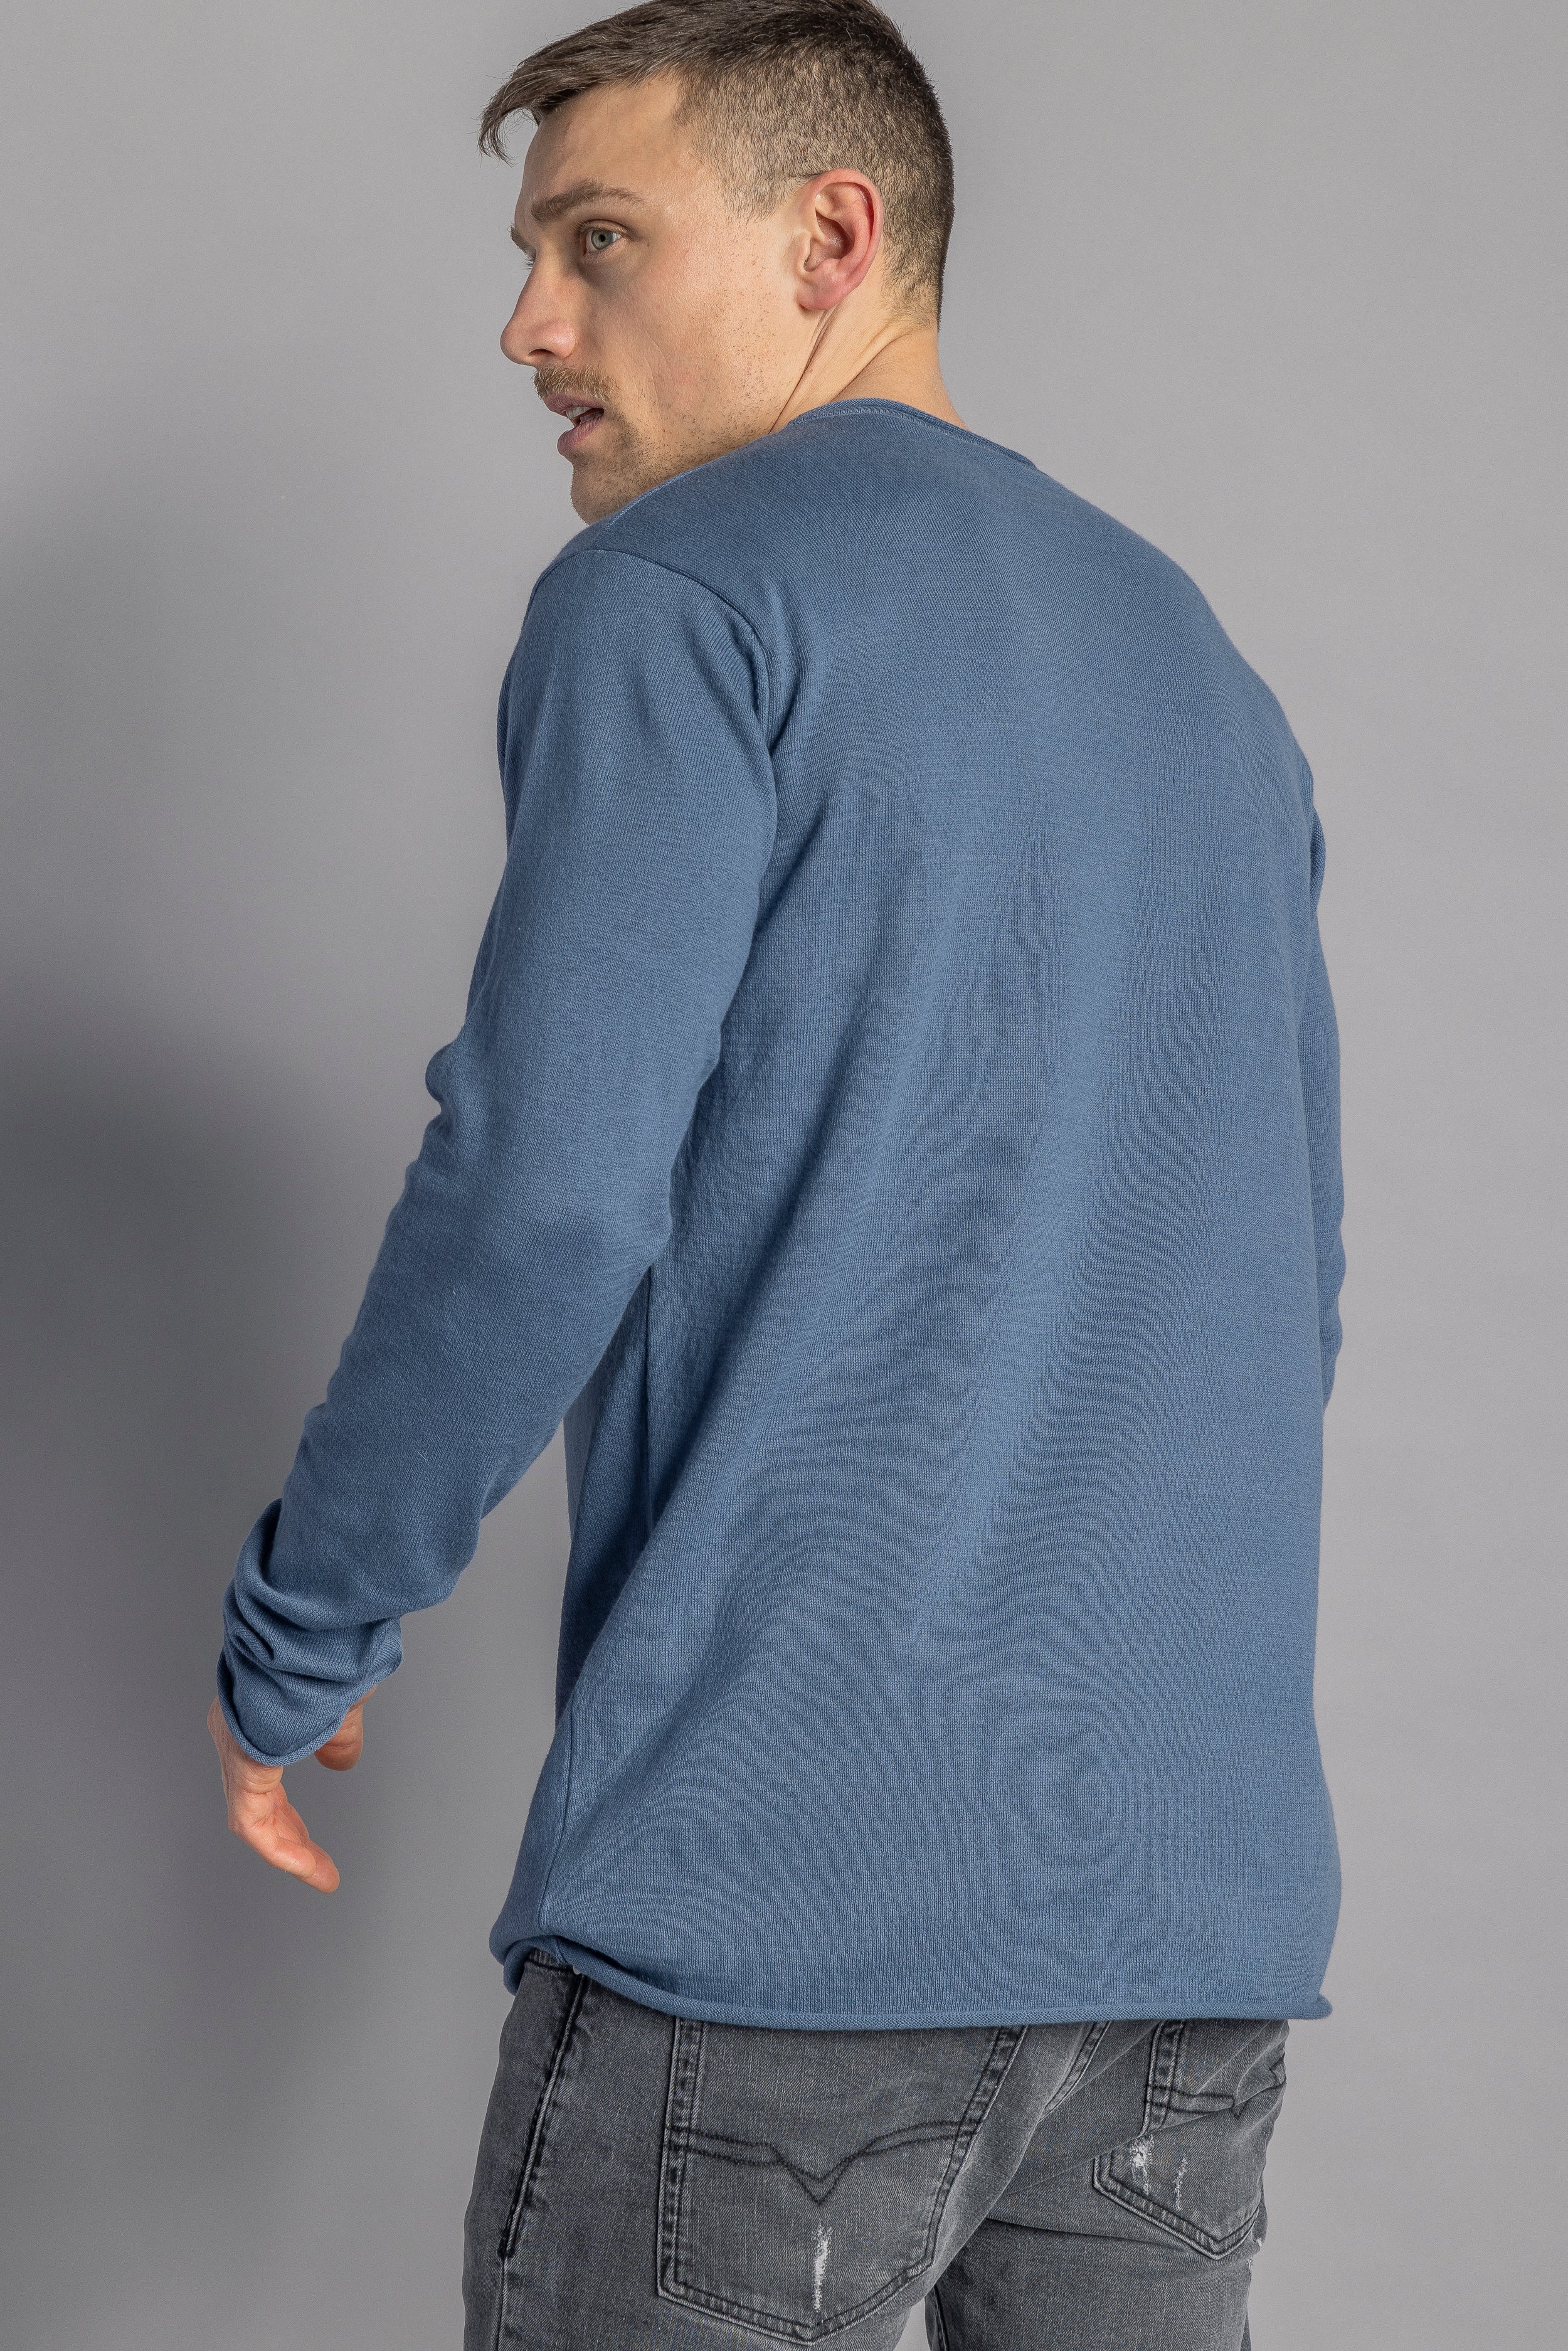 Blauer Pullover Strick-Longsleeve aus 100% Bio-Baumwolle von DIRTS